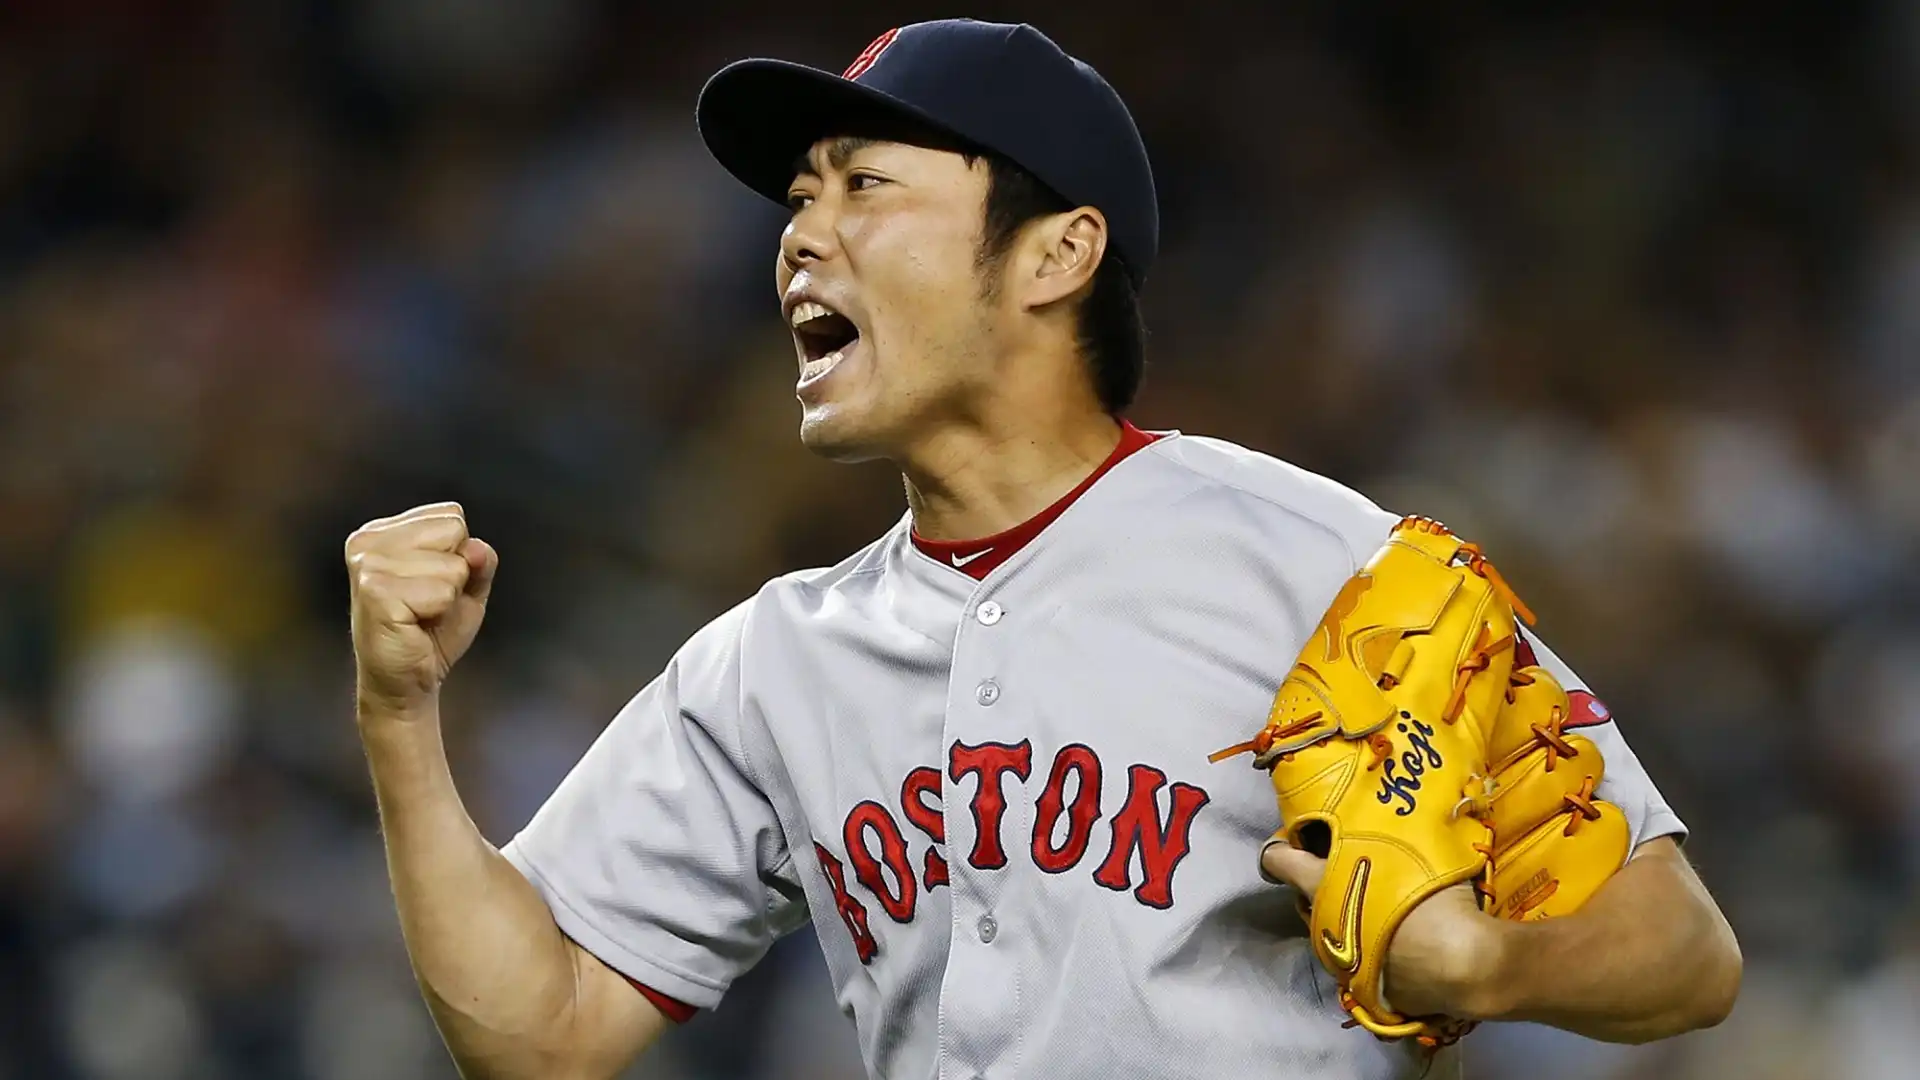 Koji Uehara (Baseball): patrimonio netto stimato 8 milioni di dollari. Ha vinto le World Series nel 2013